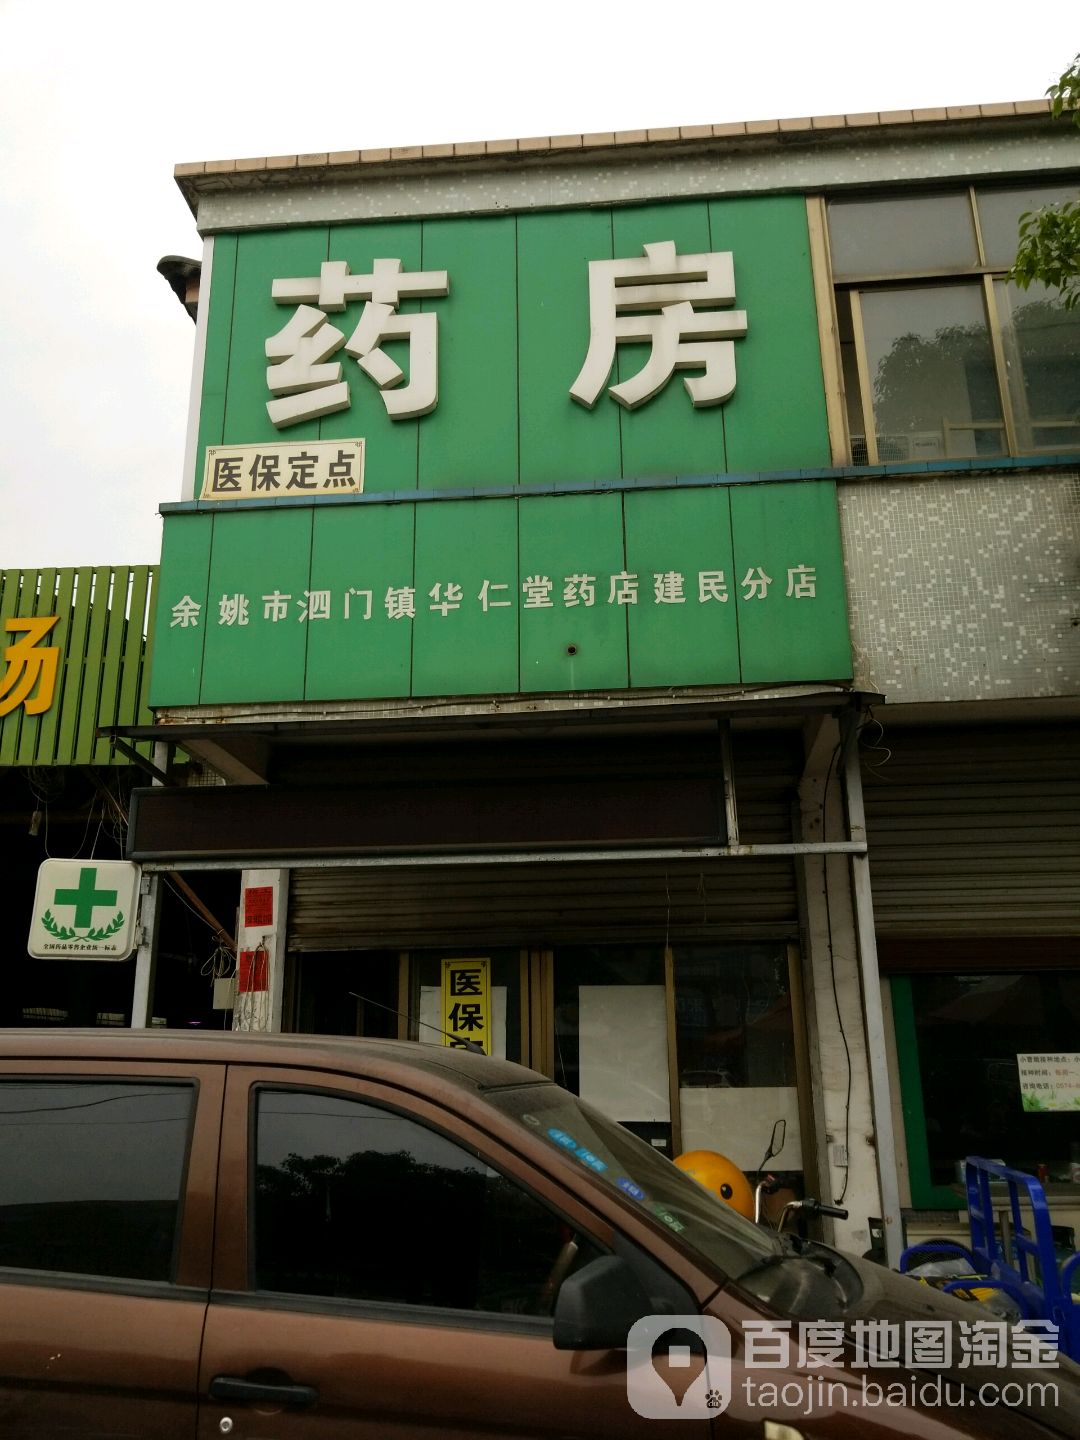 華仁堂大藥房(建民店)